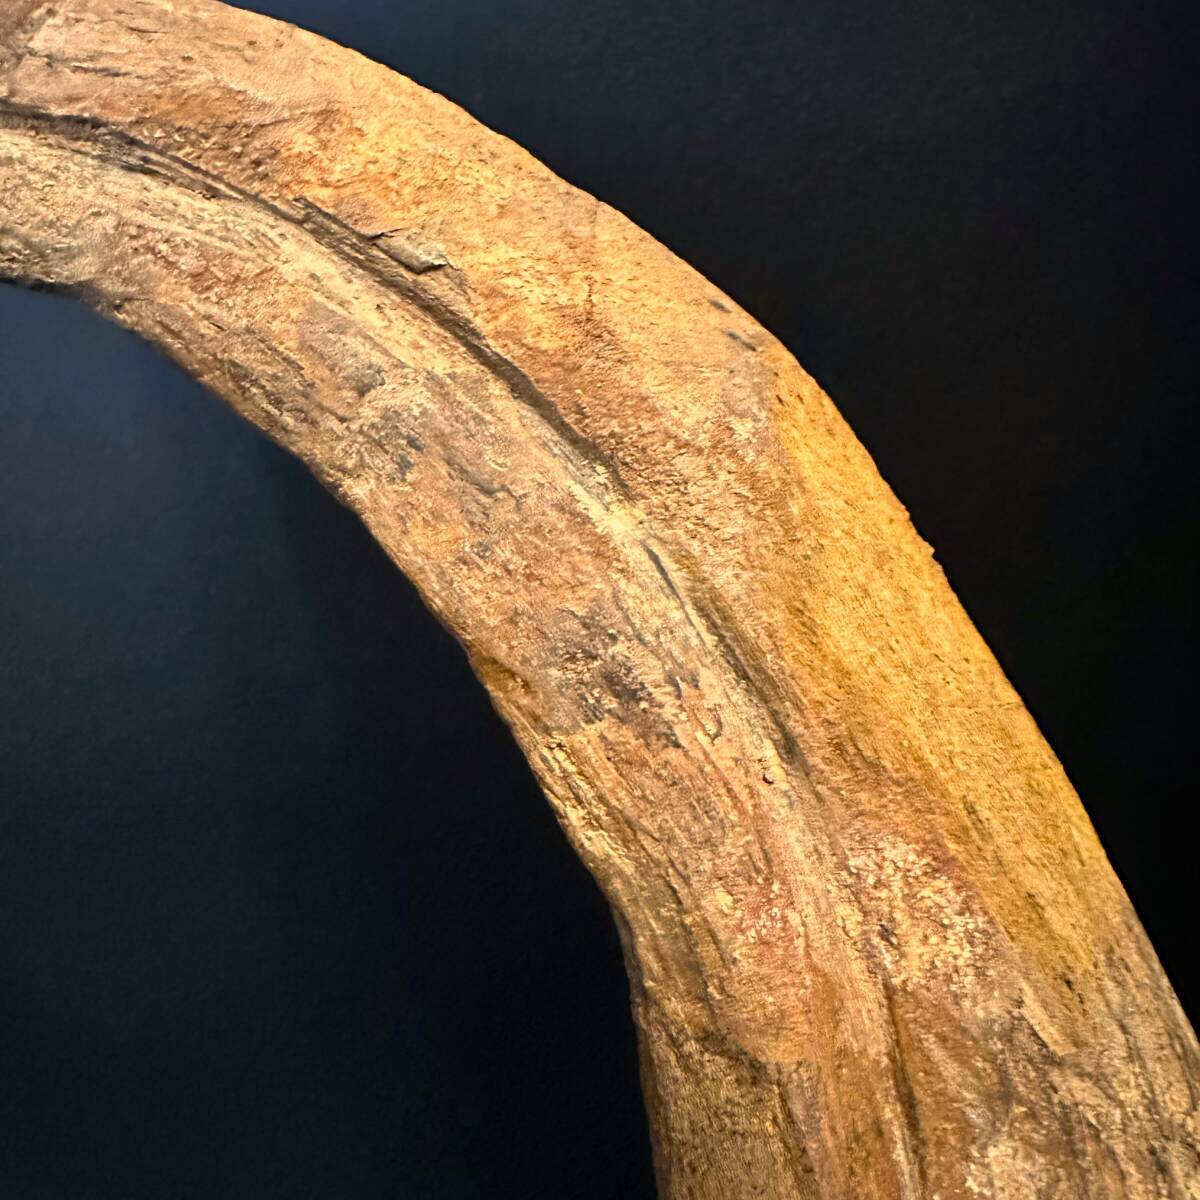 セール 4/21迄 ◆スピノサウルス 20cm超 かぎ爪◆ハンドクロウ モロッコ 恐竜 化石/先端まで尖った保存状態/ティラノサウルス好きにも/864 の画像7